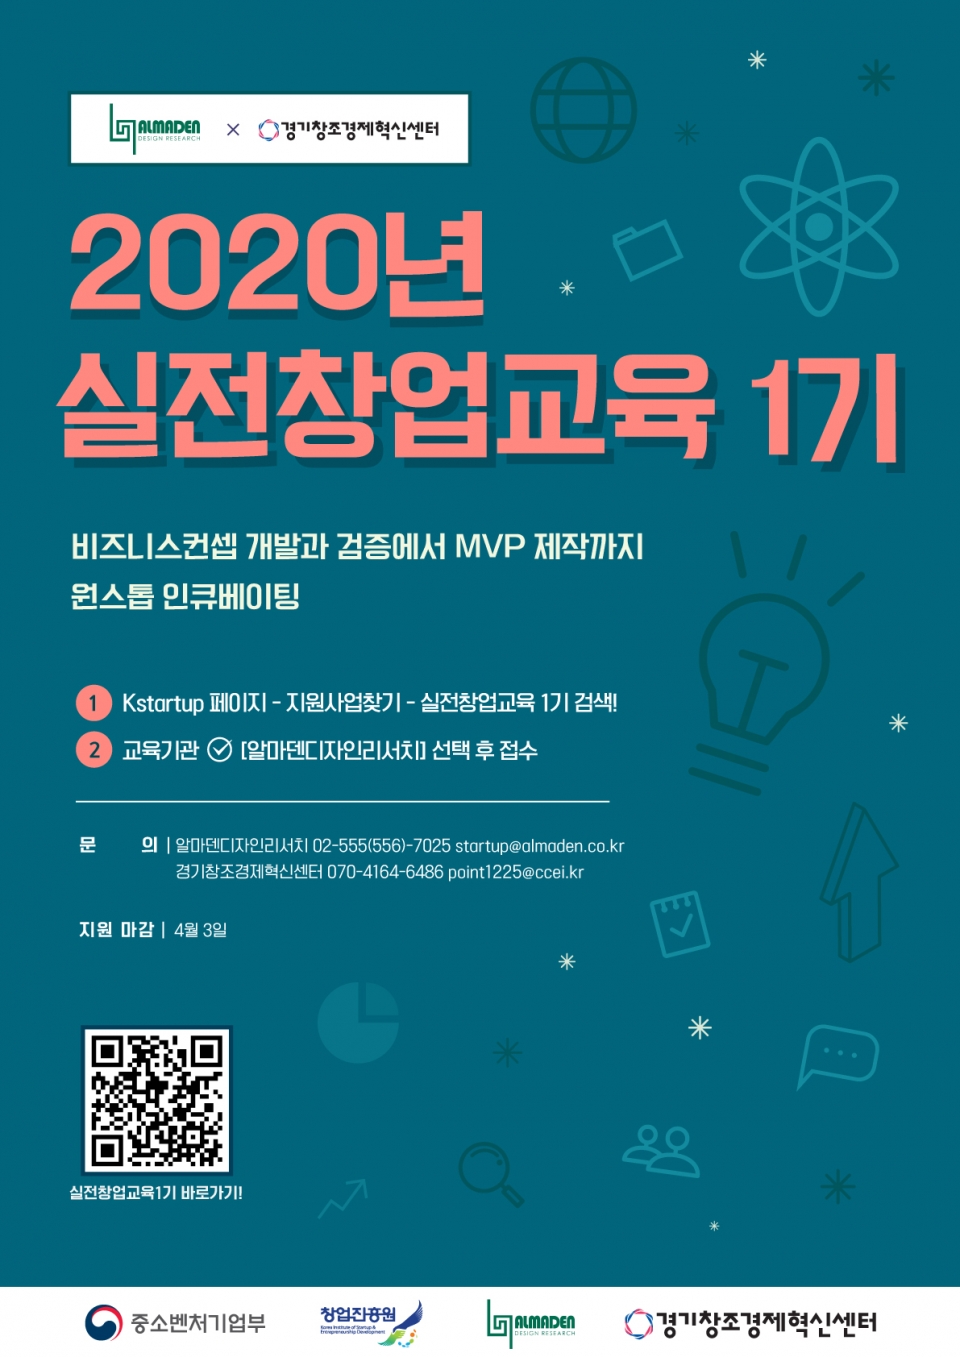 2020년 실전창업교육 모집 안내 포스터. (출처: 경기창조경제혁신센터)